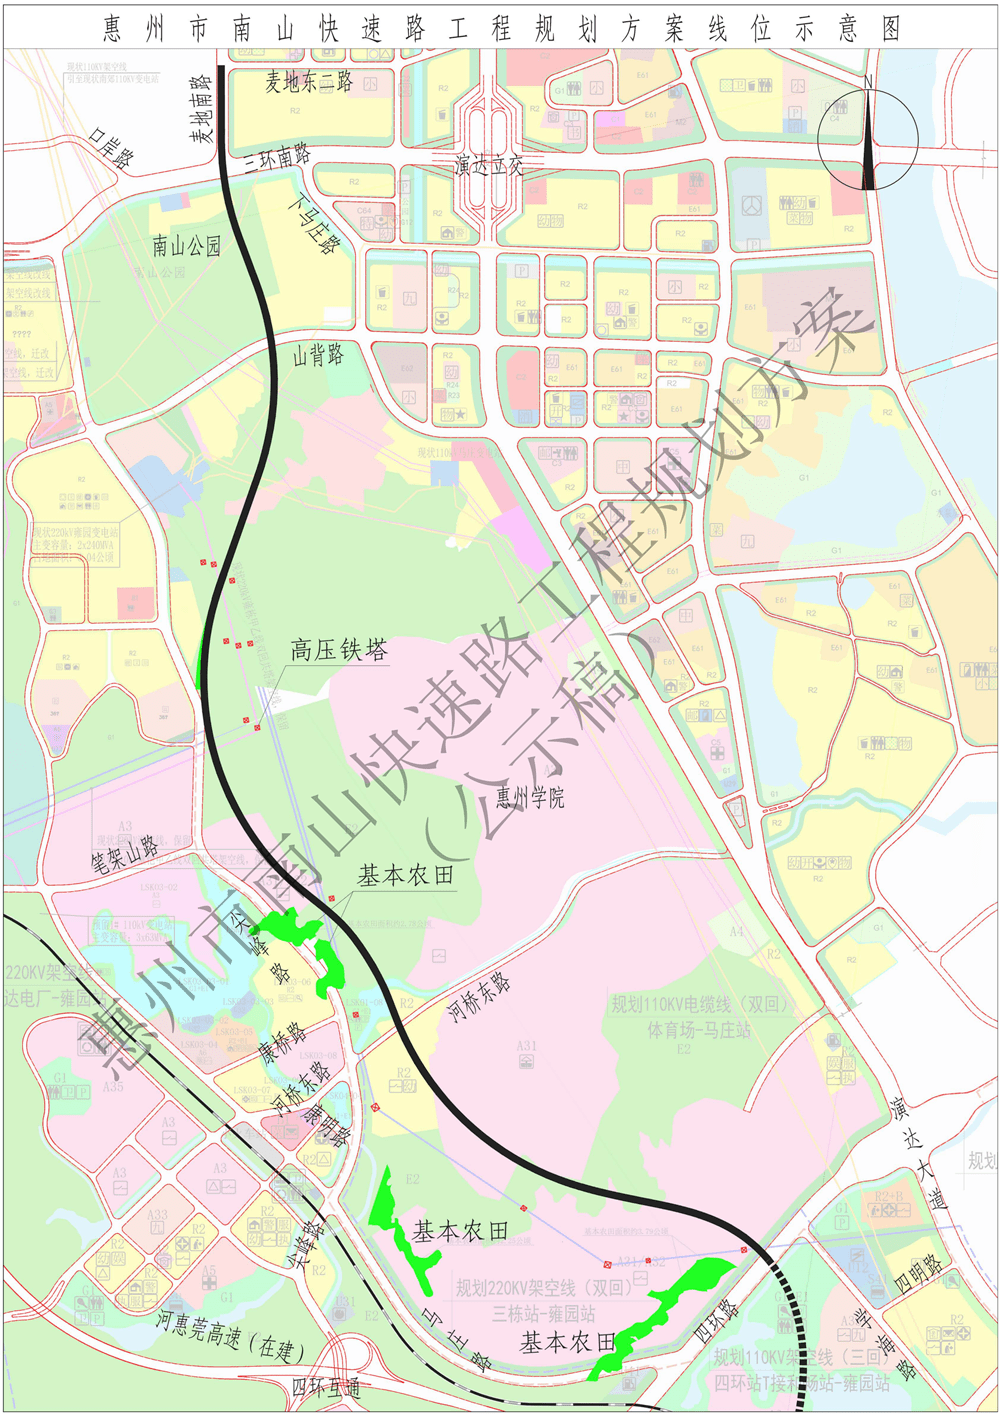 沿惠州学院规划用地边界西侧至工程终点四环南路